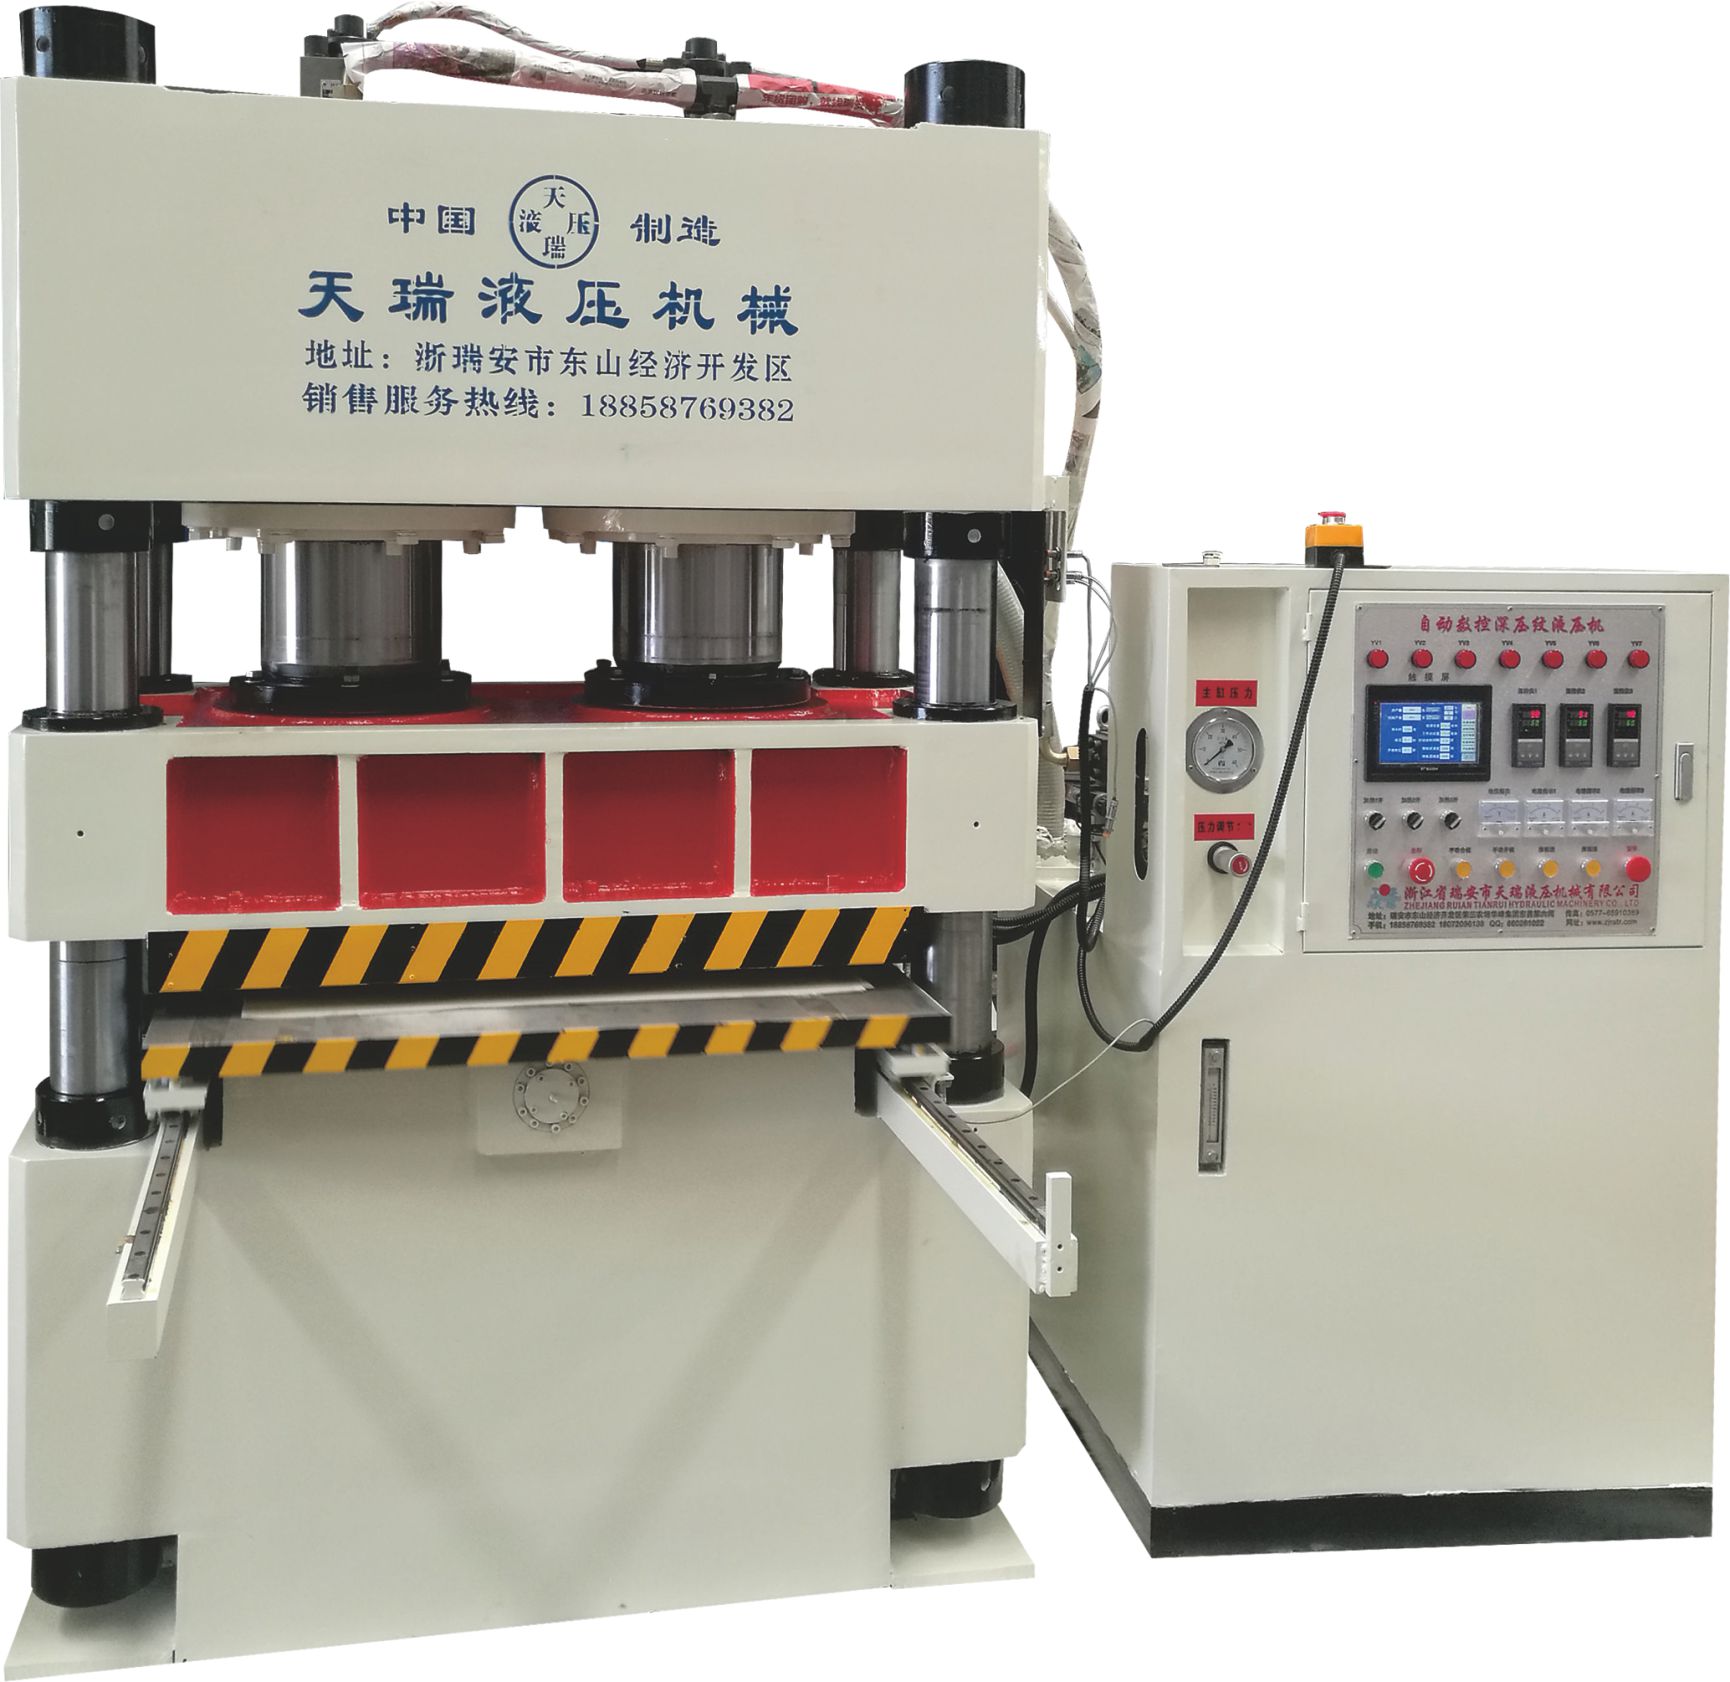 浙江拼图液压机生产厂家 拼图打散机多少钱 油压机